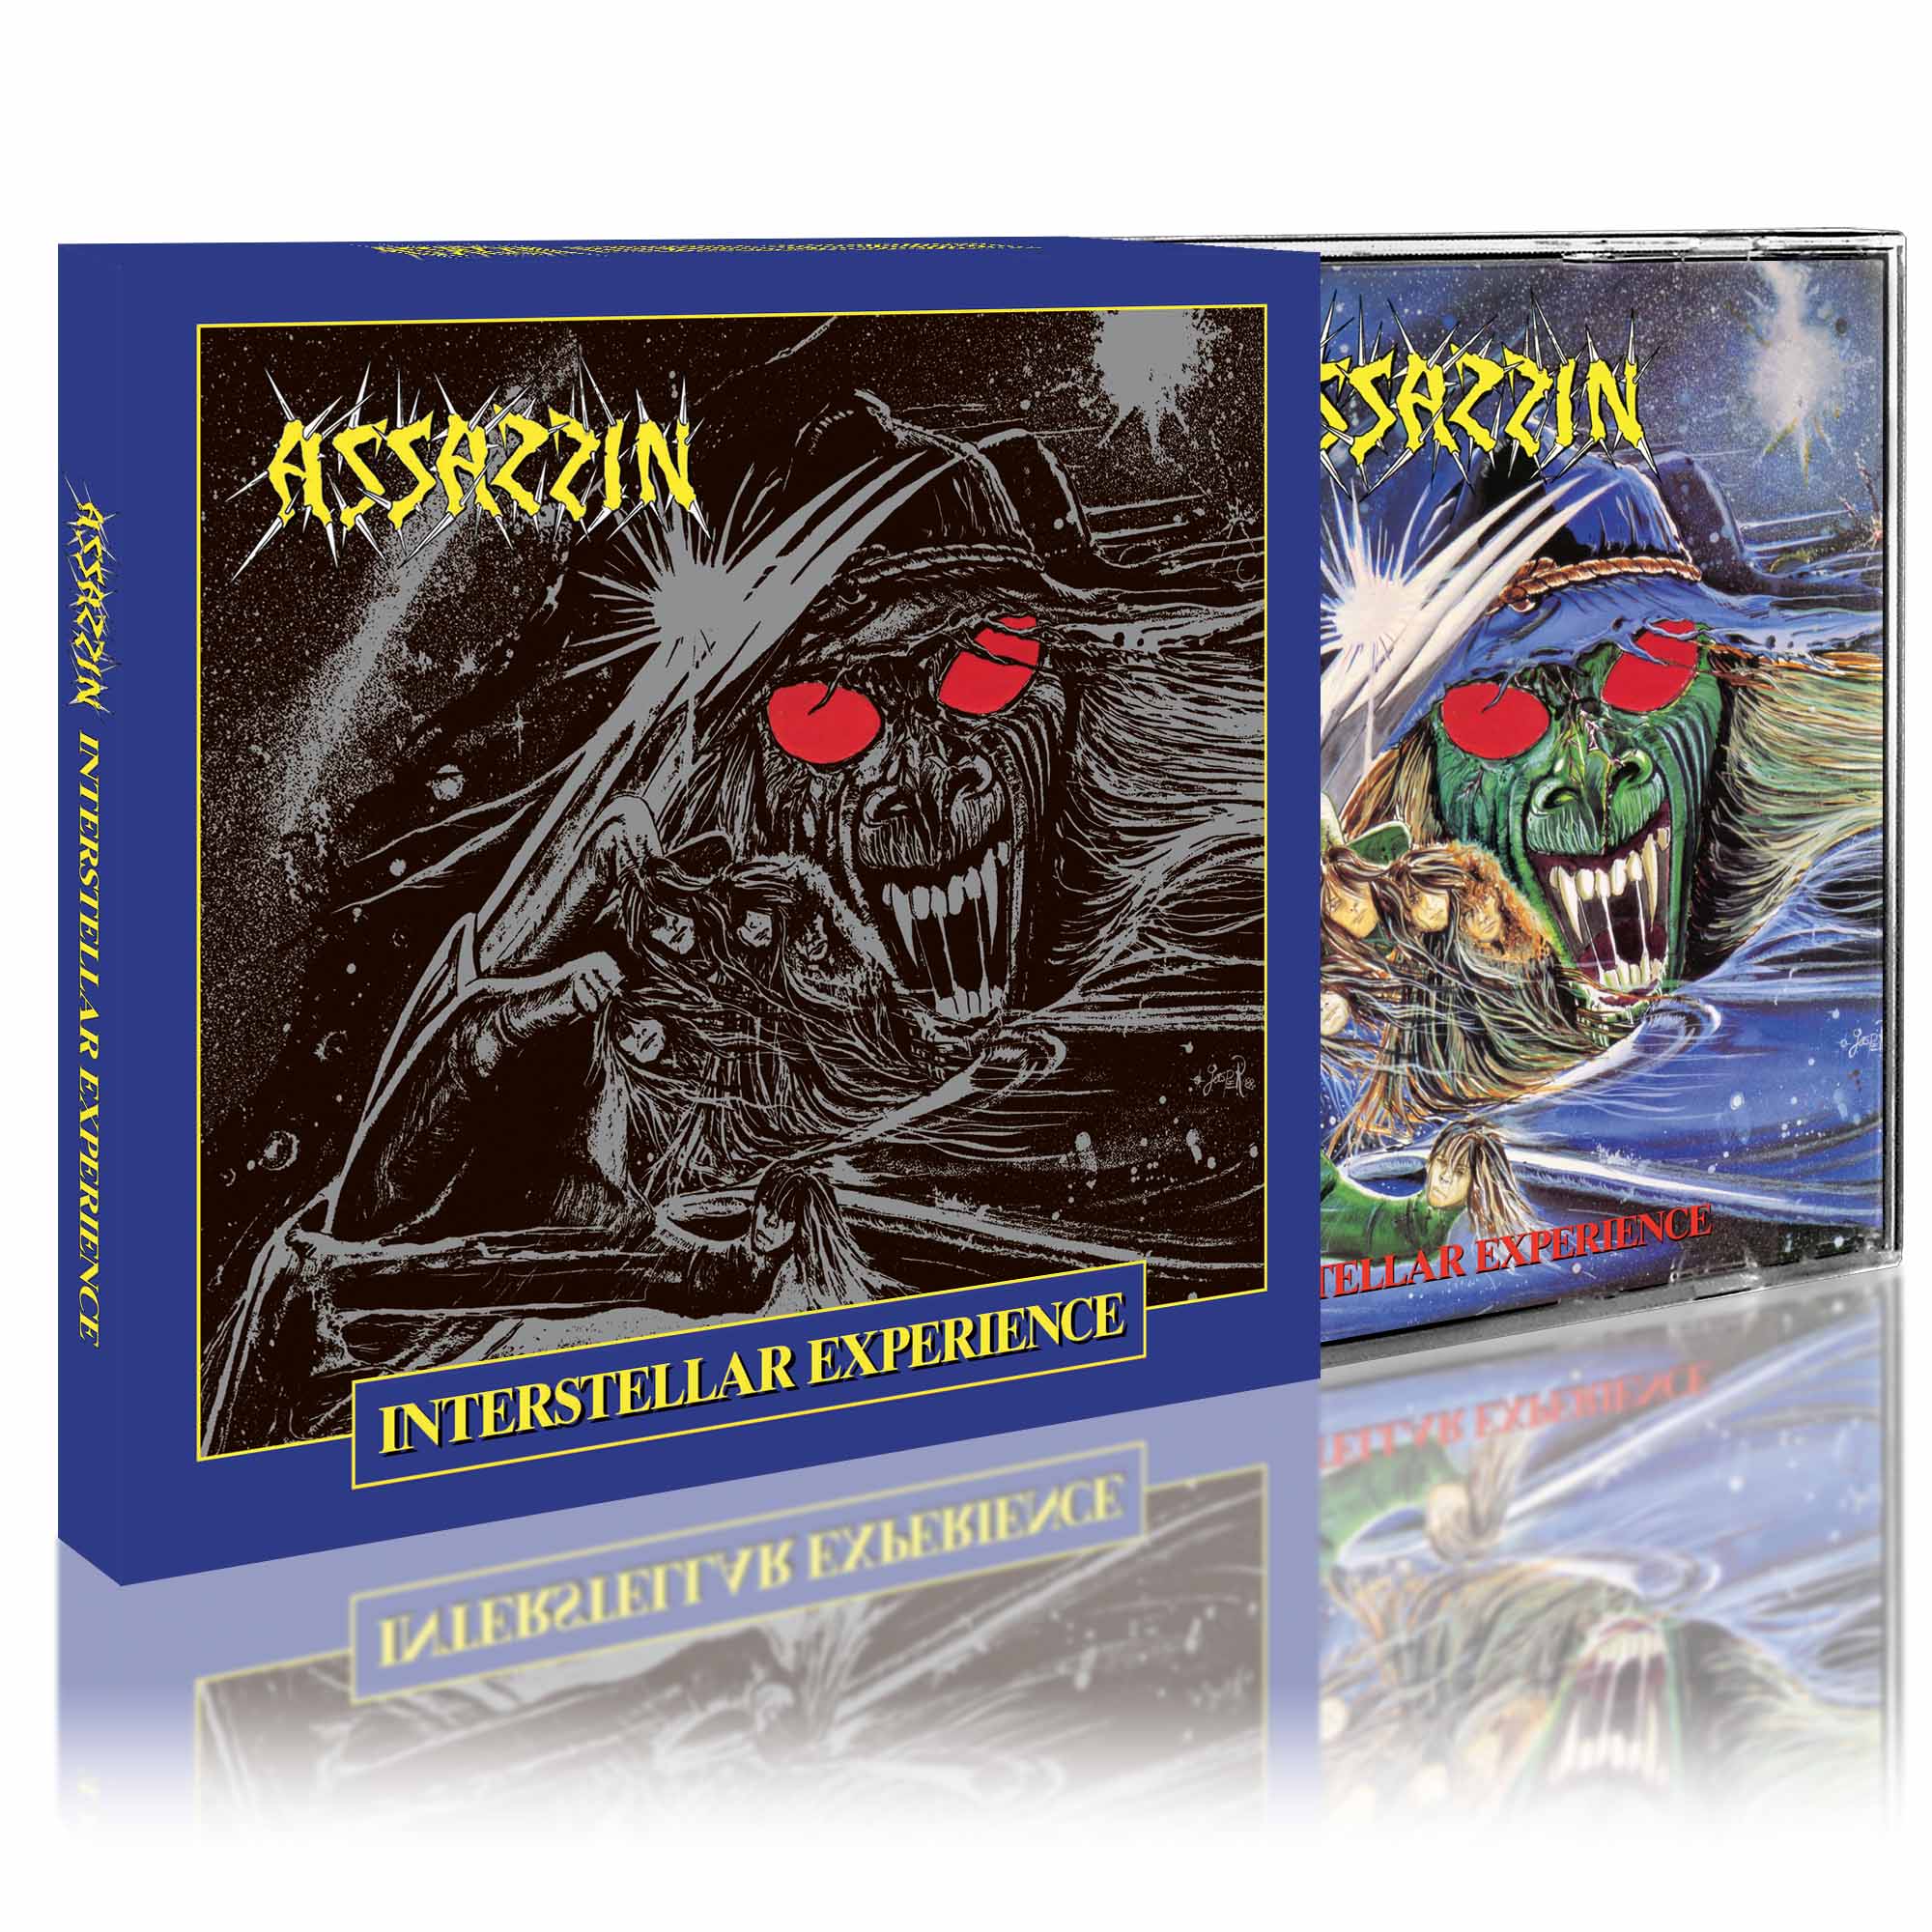 ASSASSIN - Interstellar Experience CD